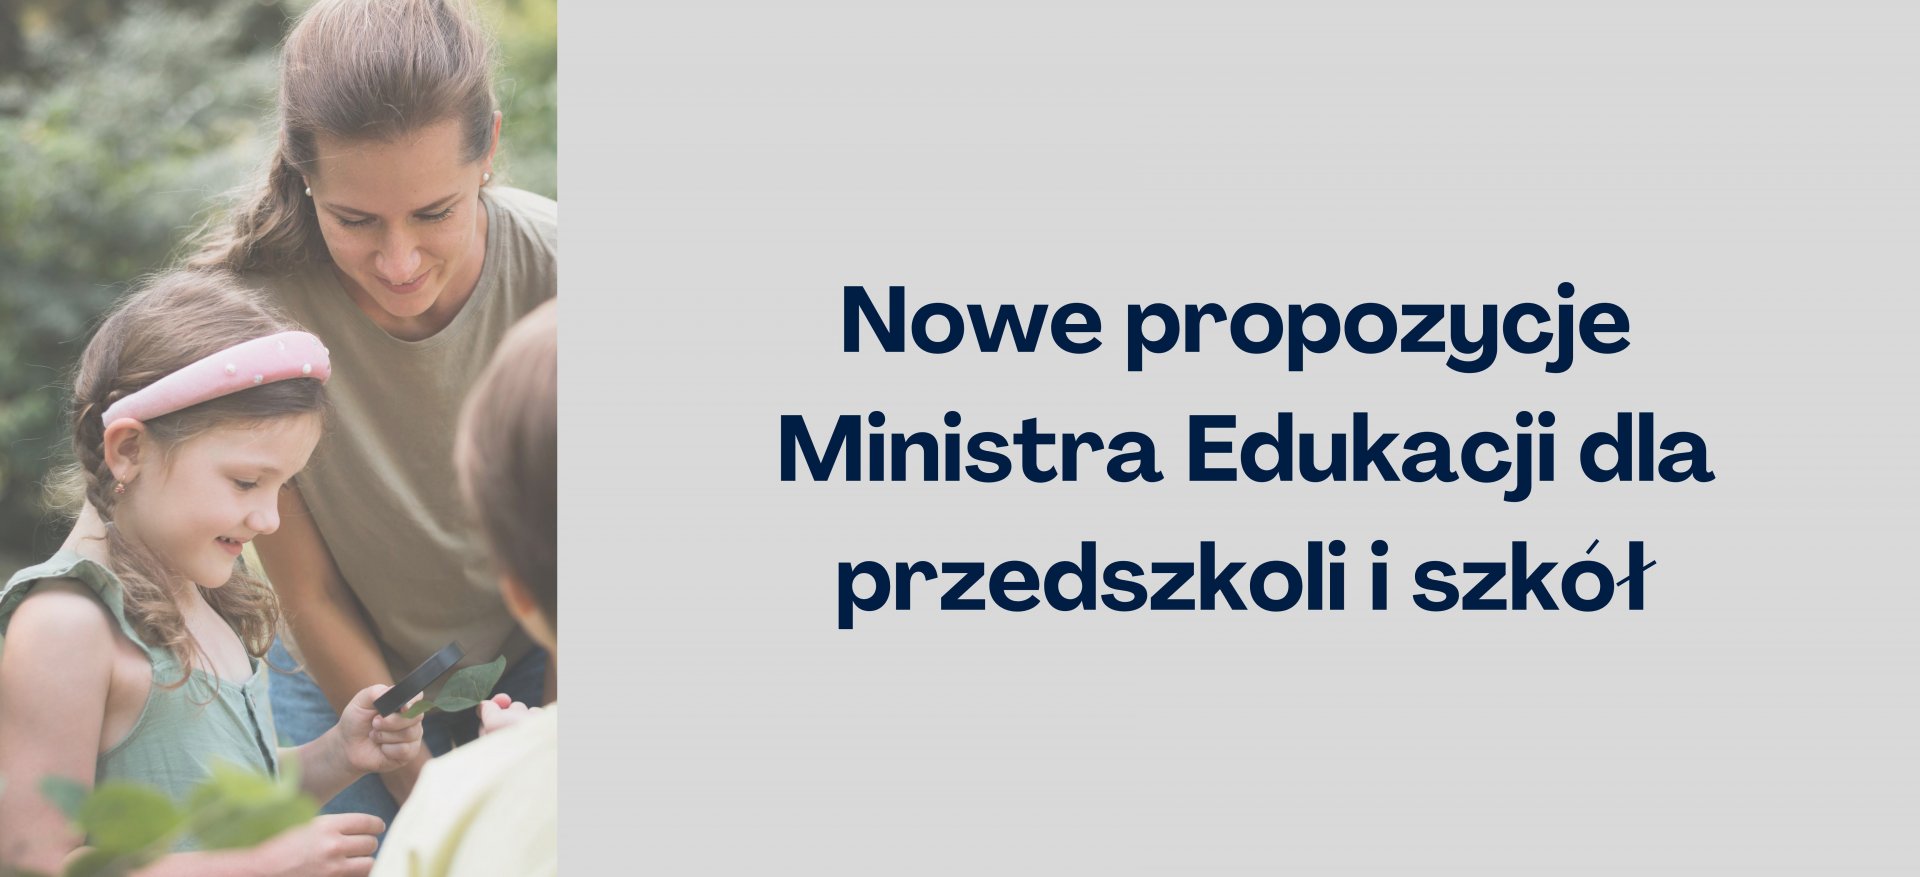 Nowe programy Ministra Edukacji dla szkół i przedszkoli